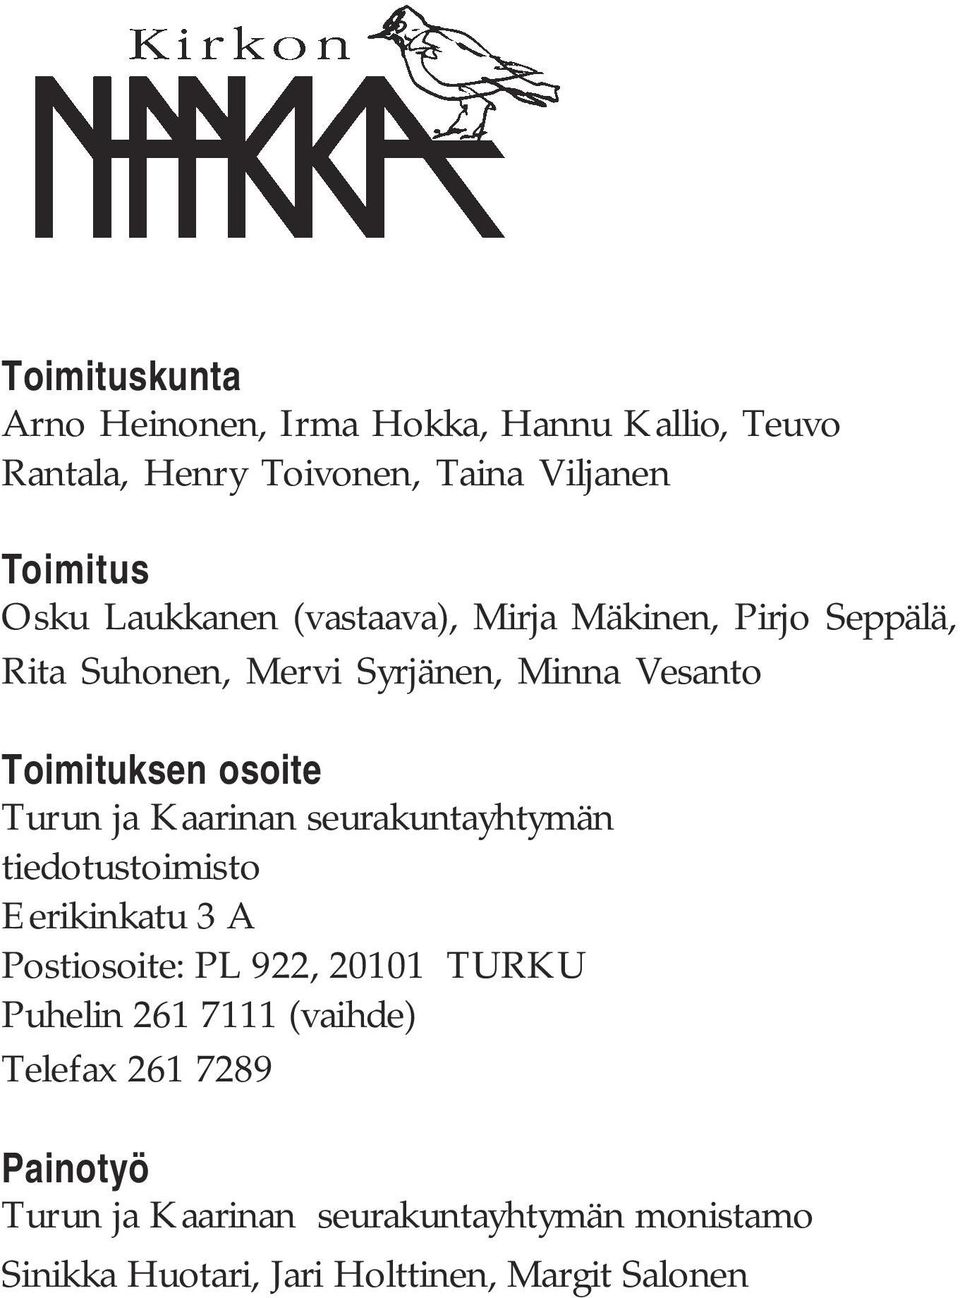 Turun ja Kaarinan seurakuntayhtymän tiedotustoimisto Eerikinkatu 3 A Postiosoite: PL 922, 20101 TURKU Puhelin 261 7111